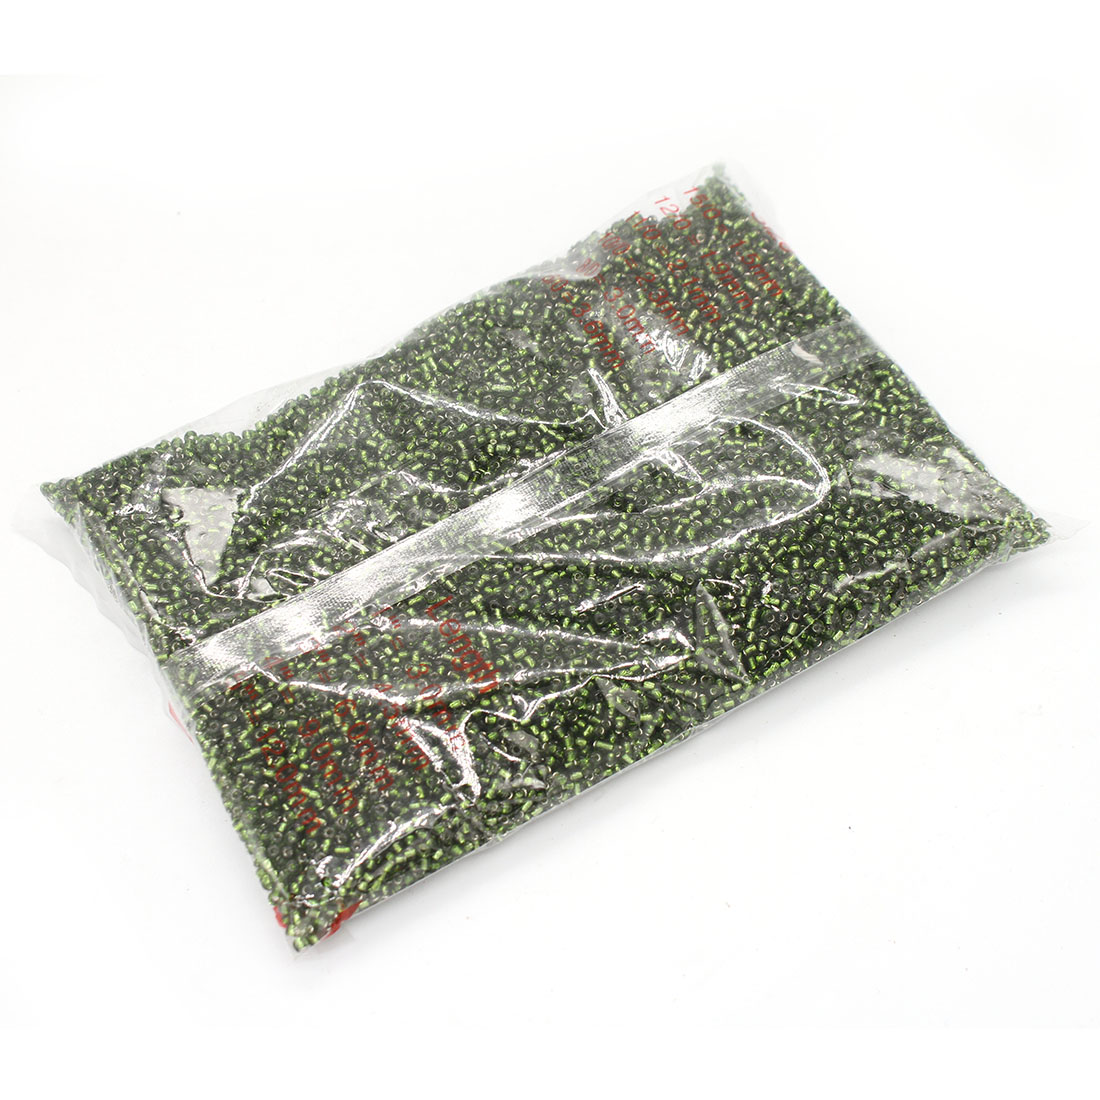 Green grass 3mm 10,000 packs